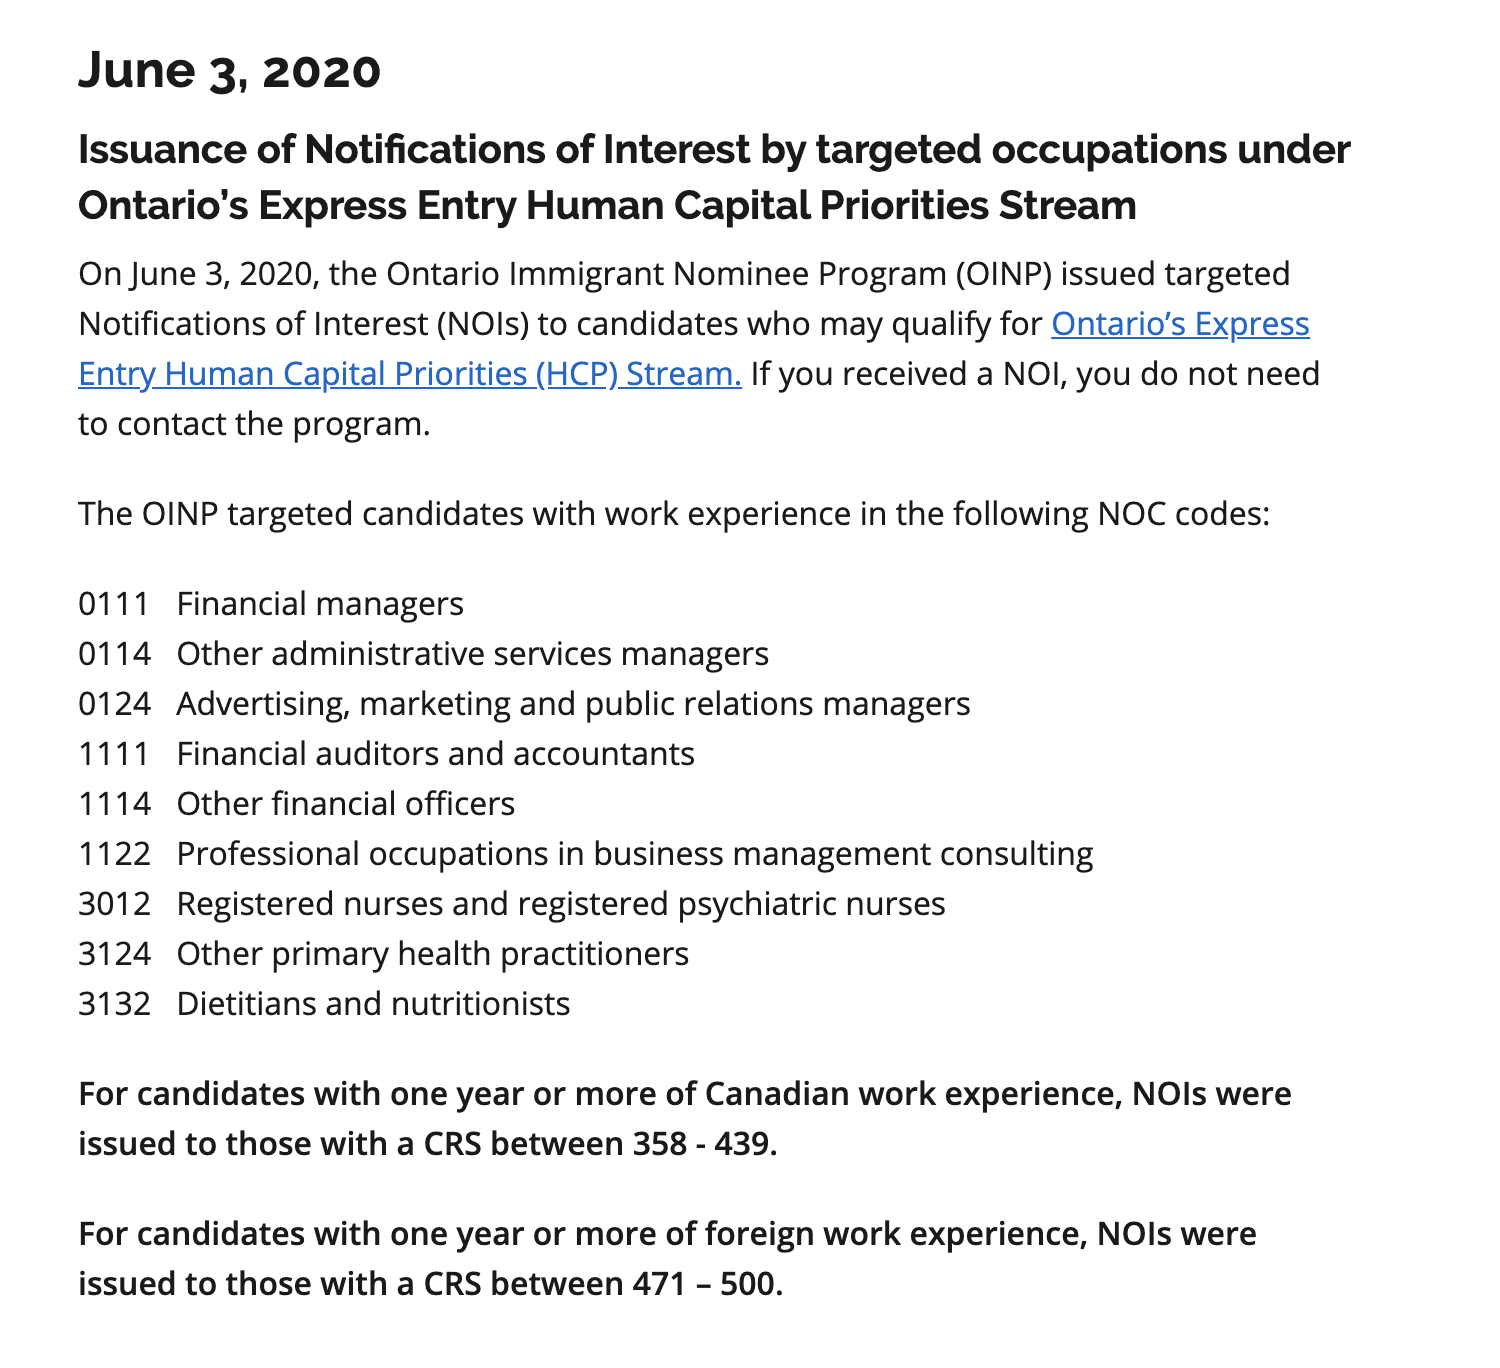 В июне 2020 года Онтарио тоже были нужны специалисты по связям с общественностью, а также маркетологи, нутрициологи и медсестры